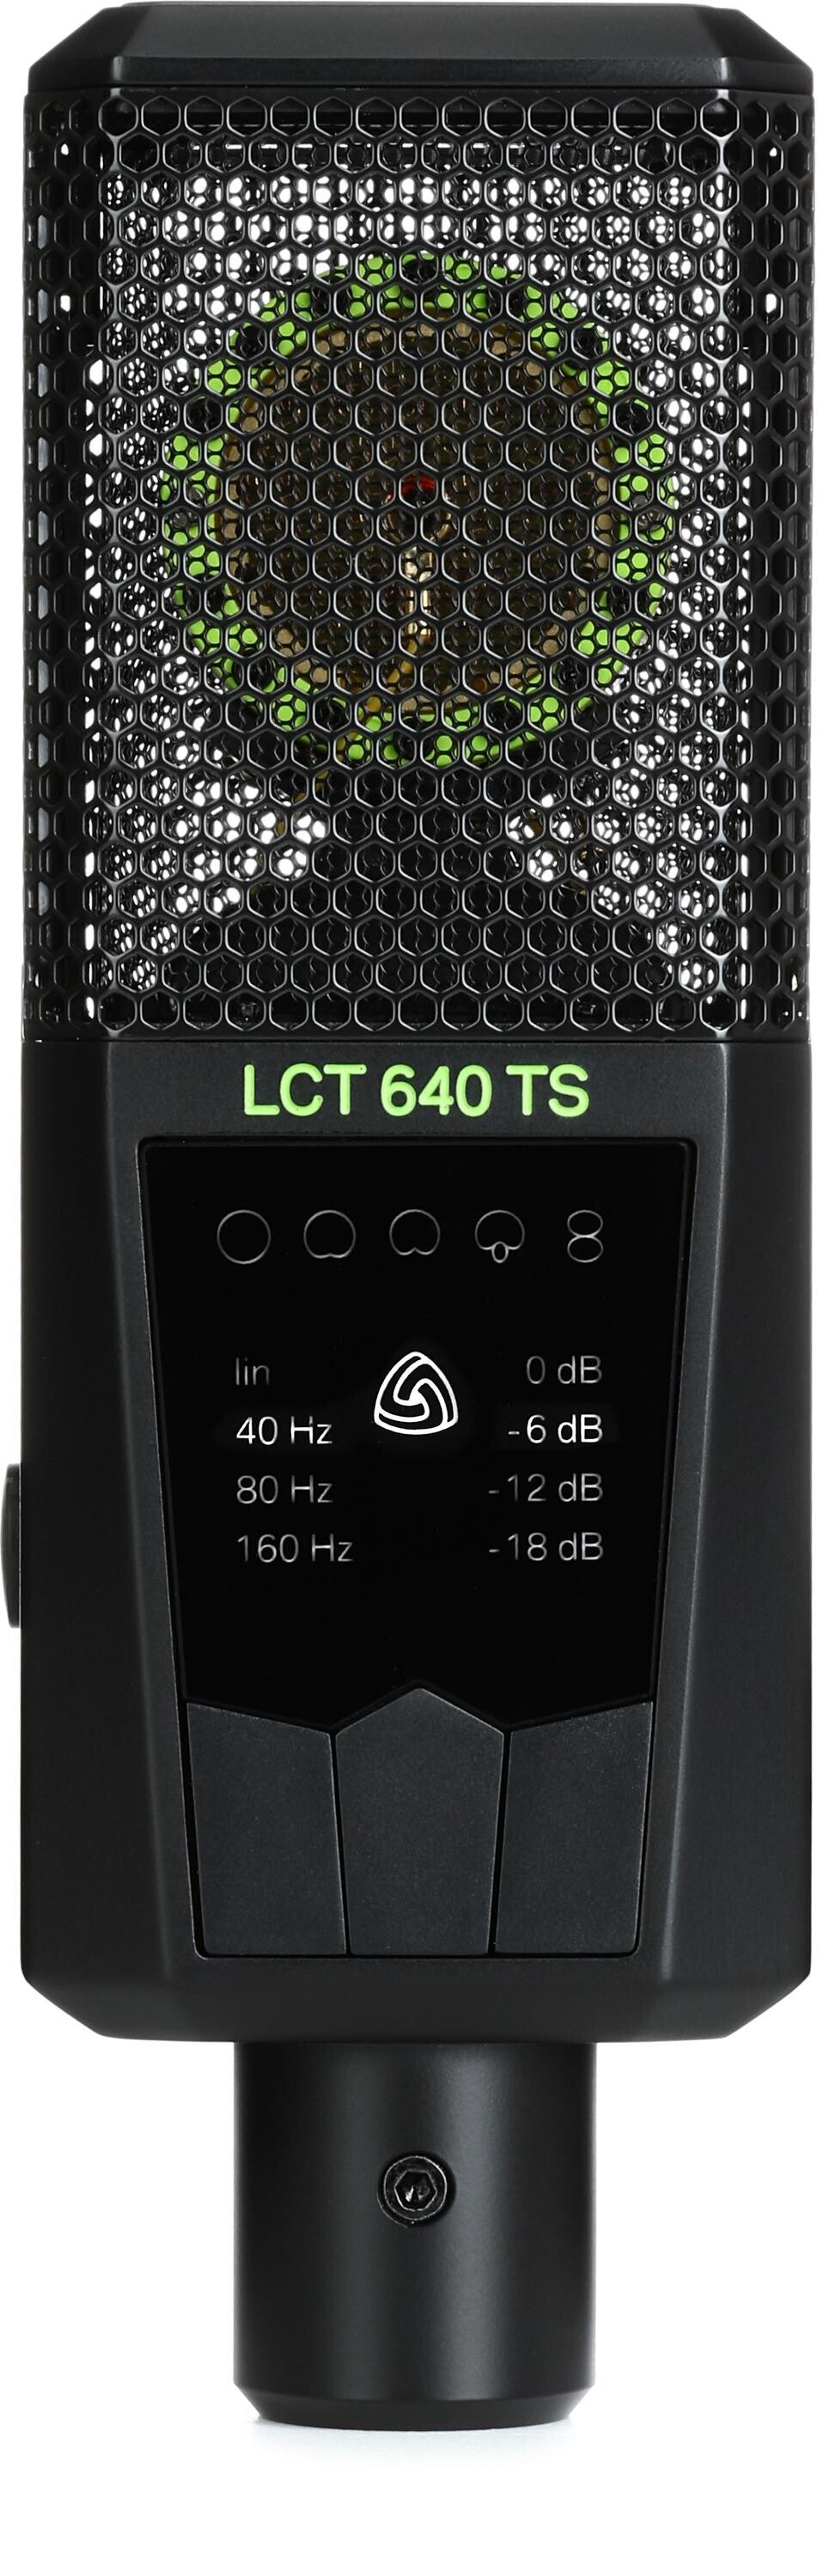 TS-469 Pro, Hardware Specs